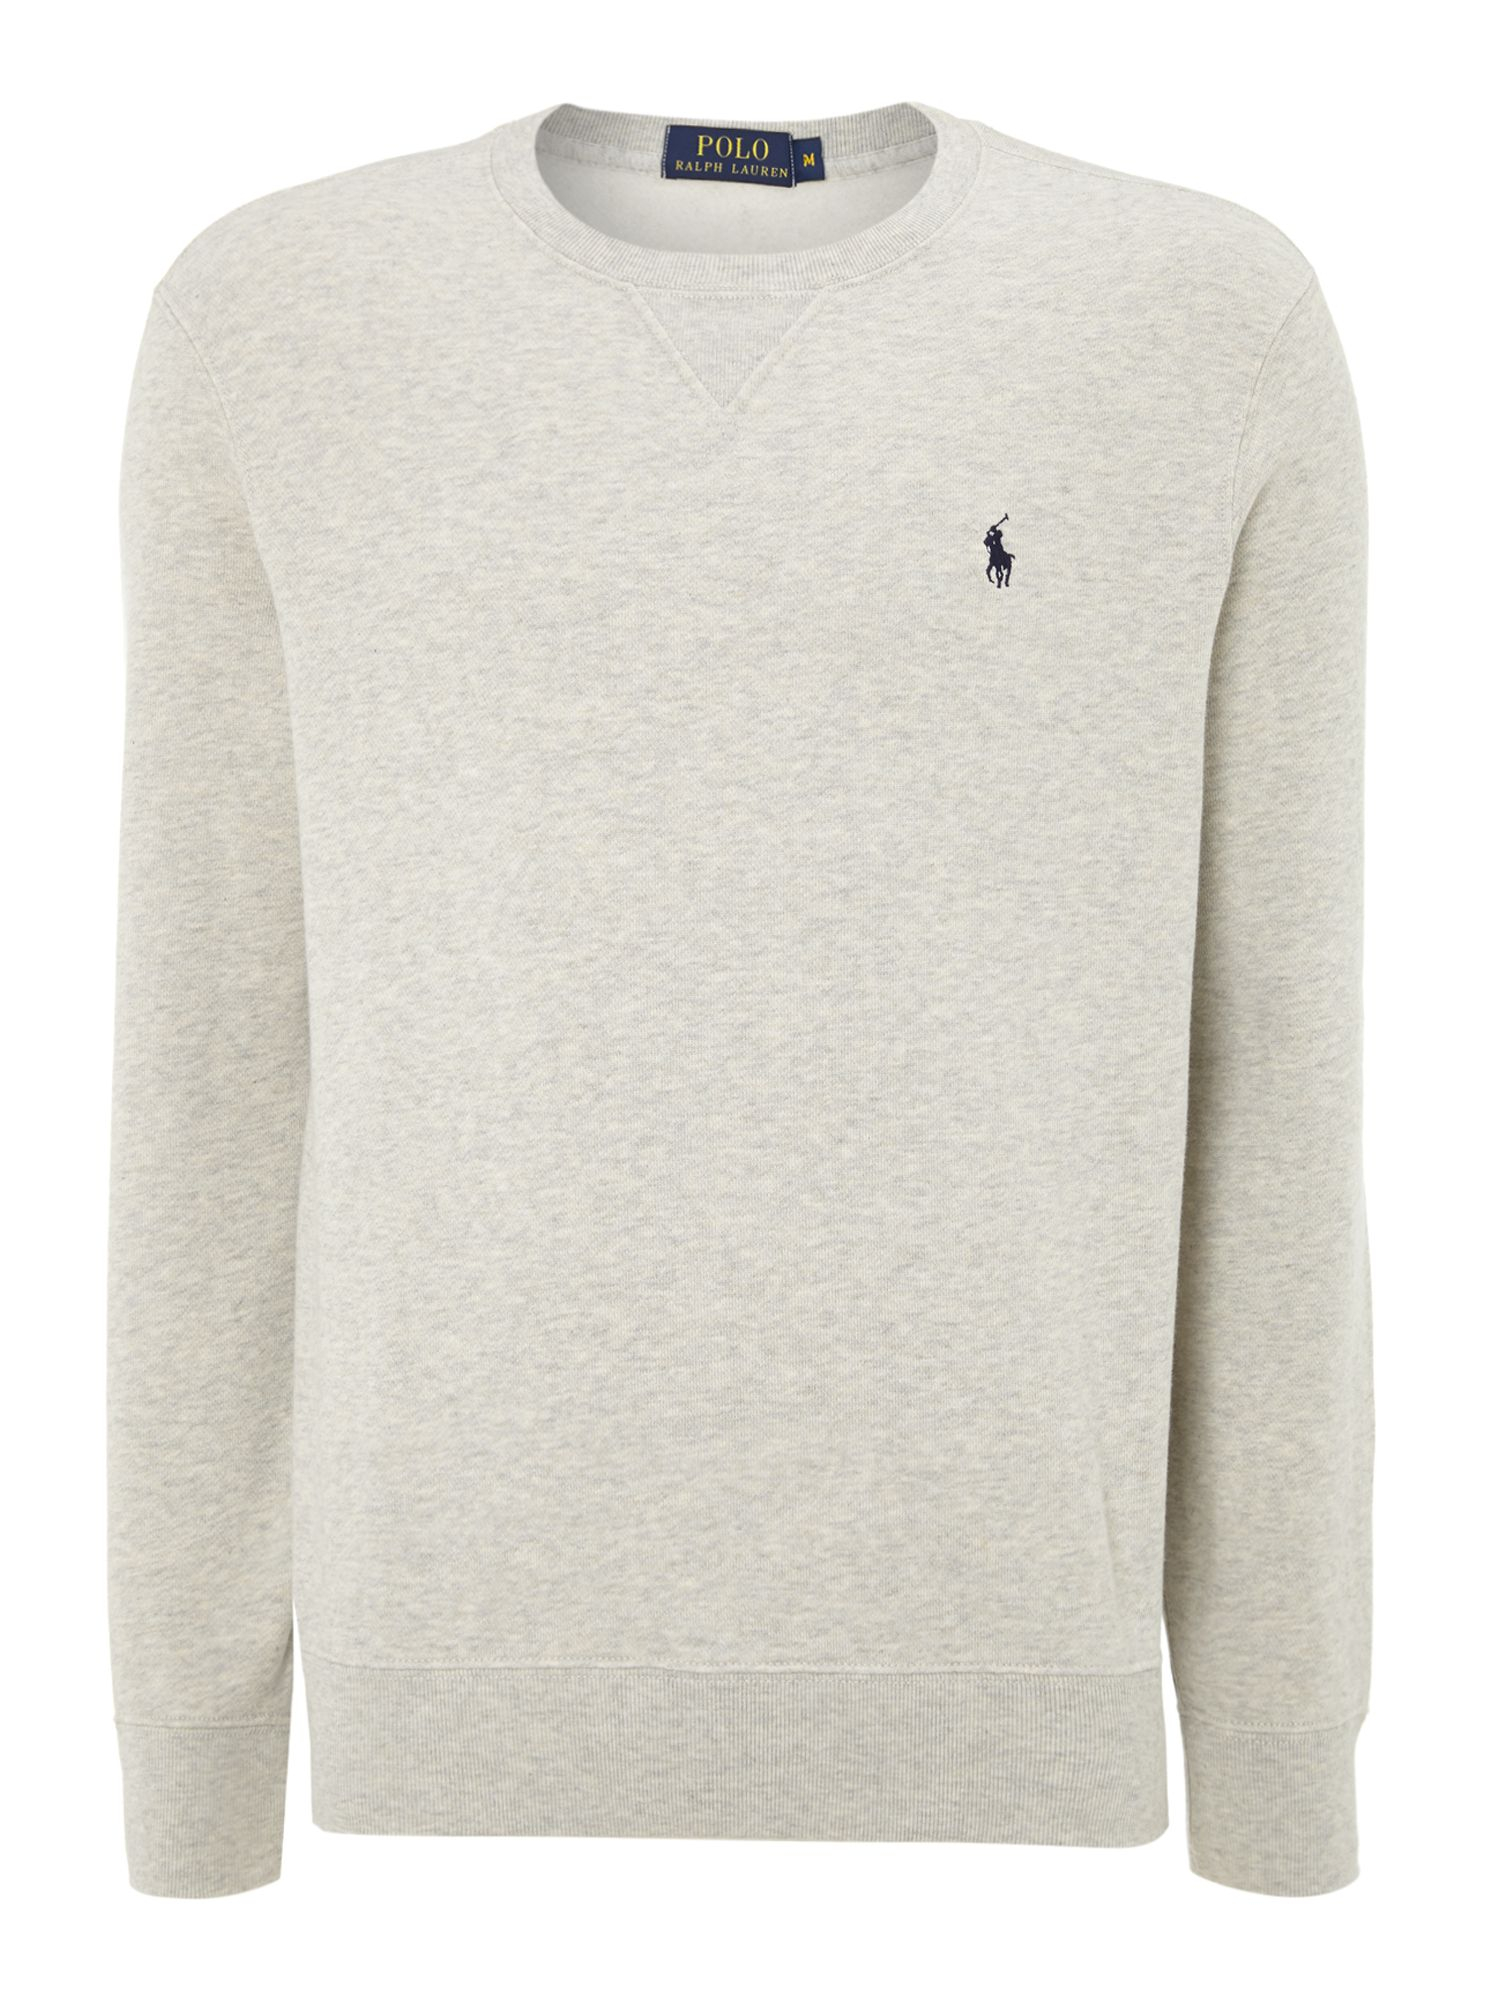 Polo ralph lauren Crew Neck Sweatshirt in Gray for Men (Grey) | Lyst